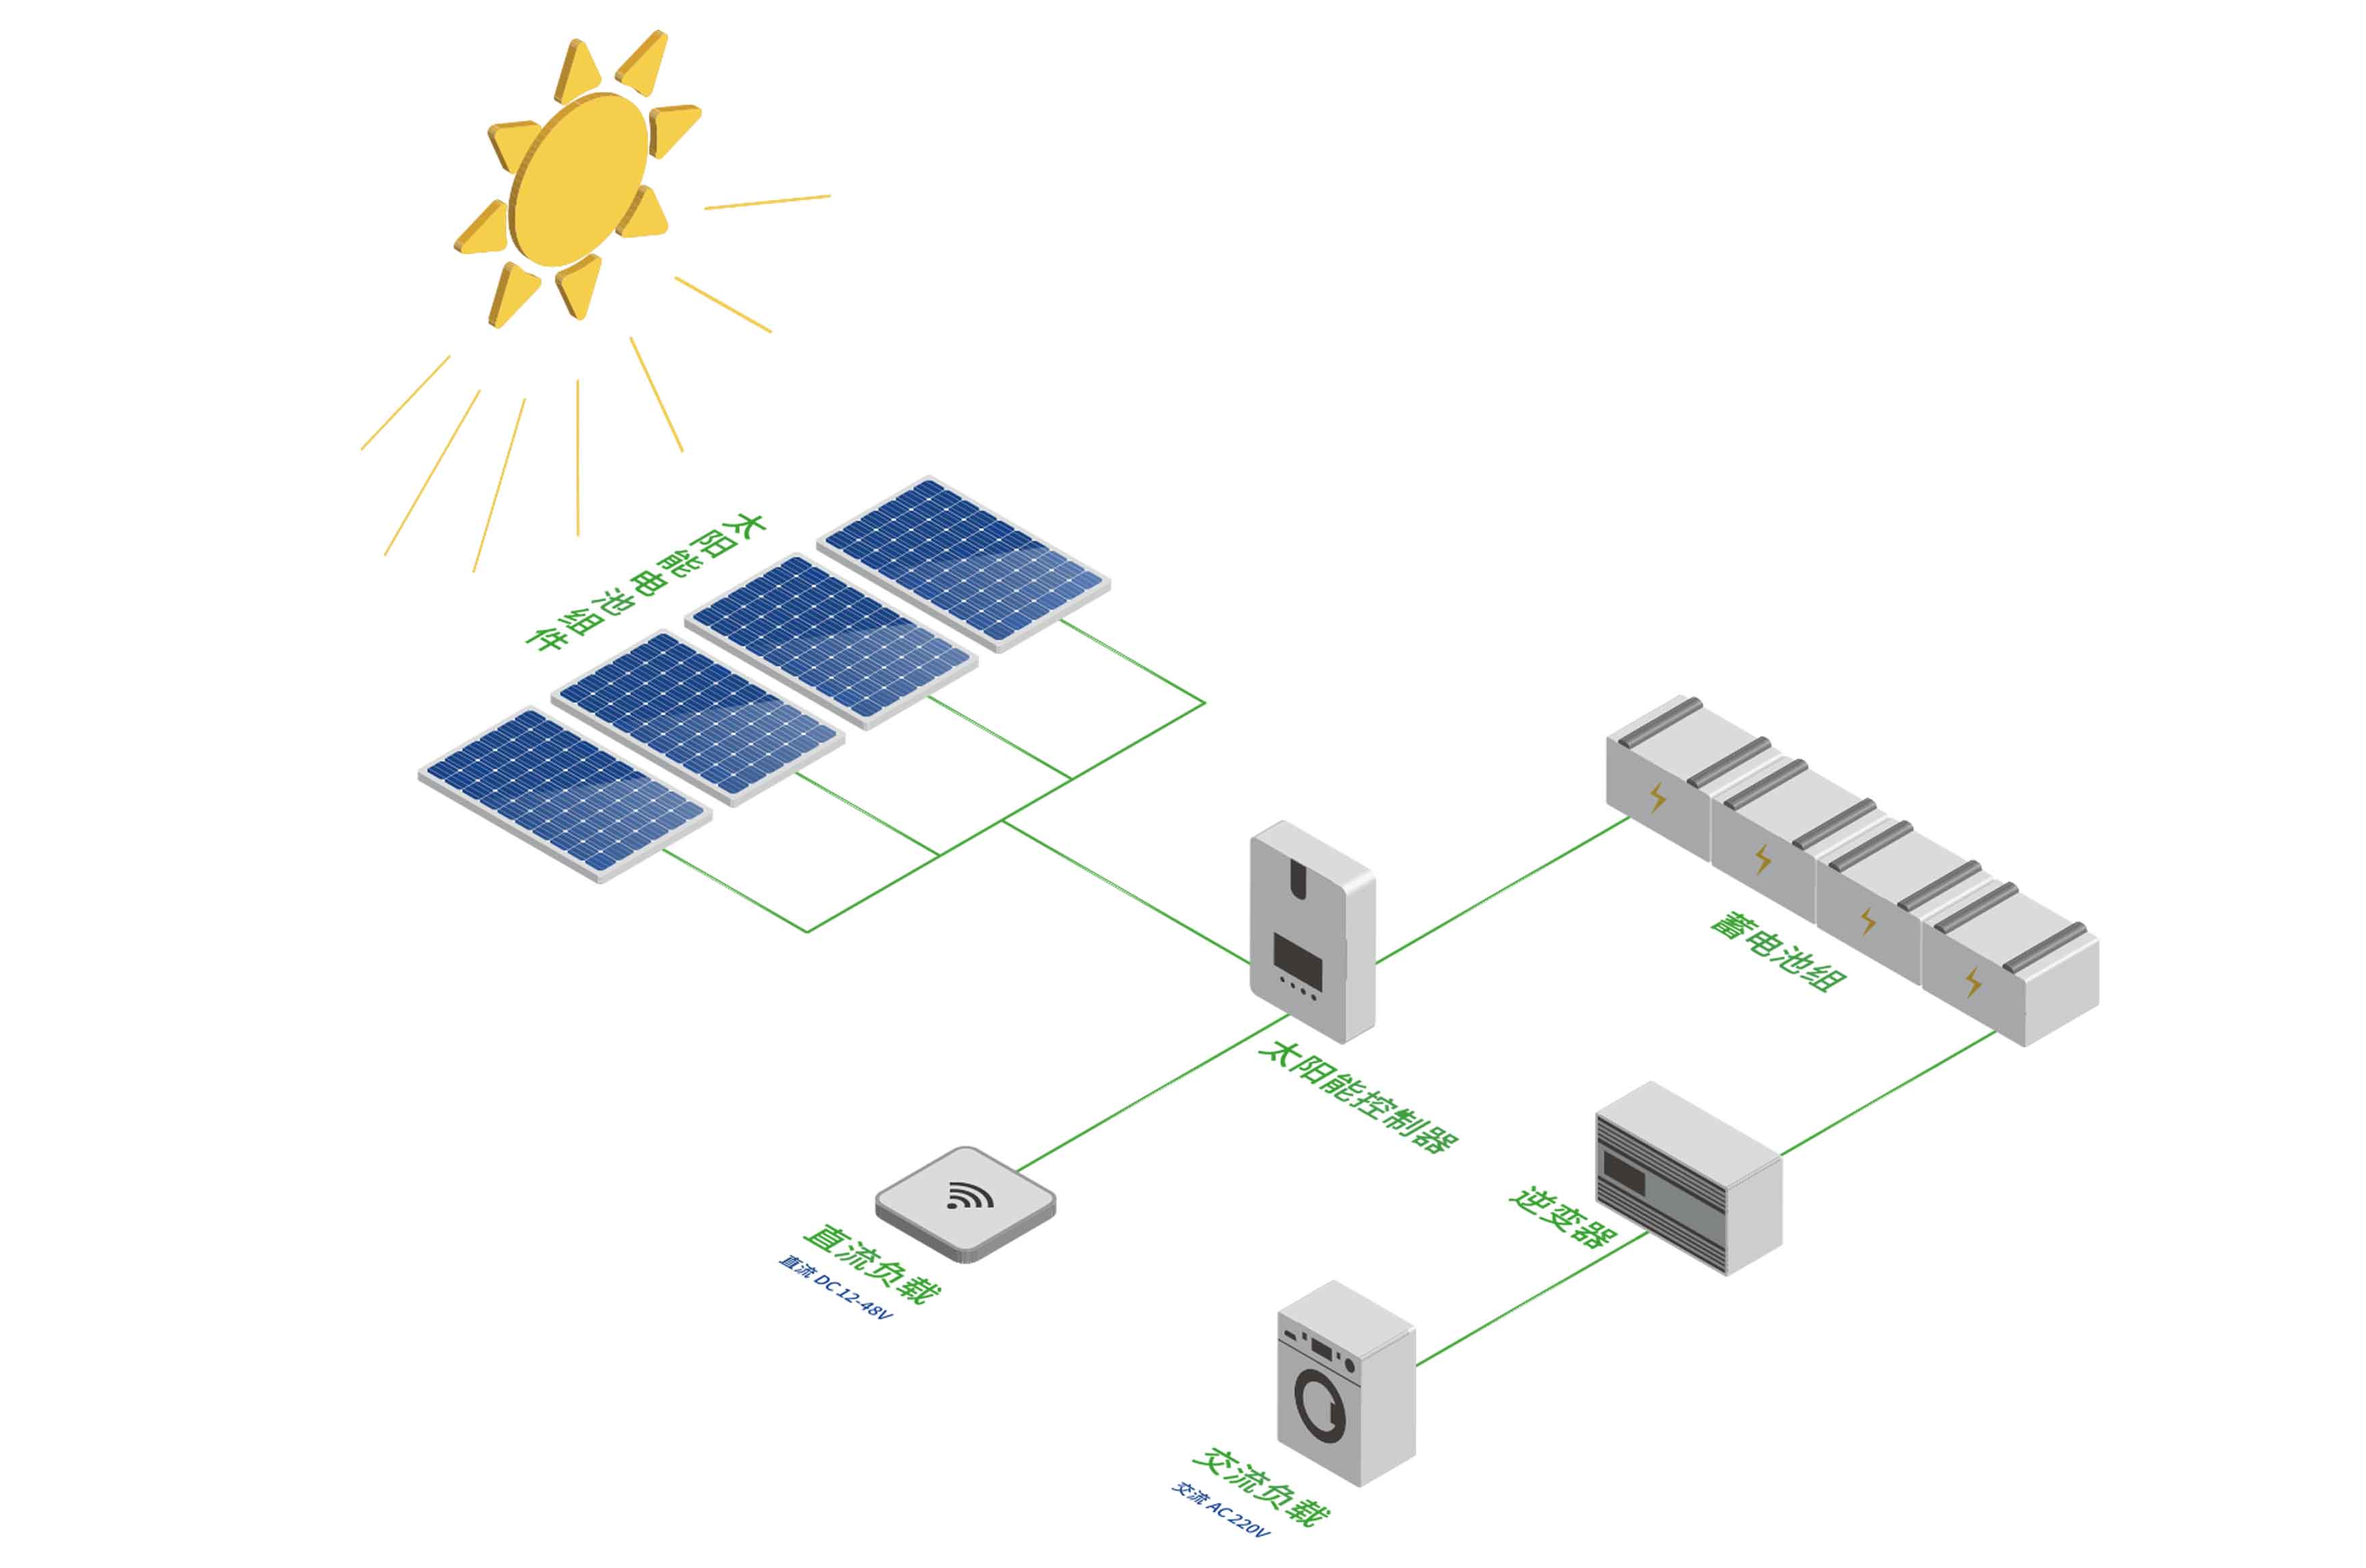 太阳能供电系统